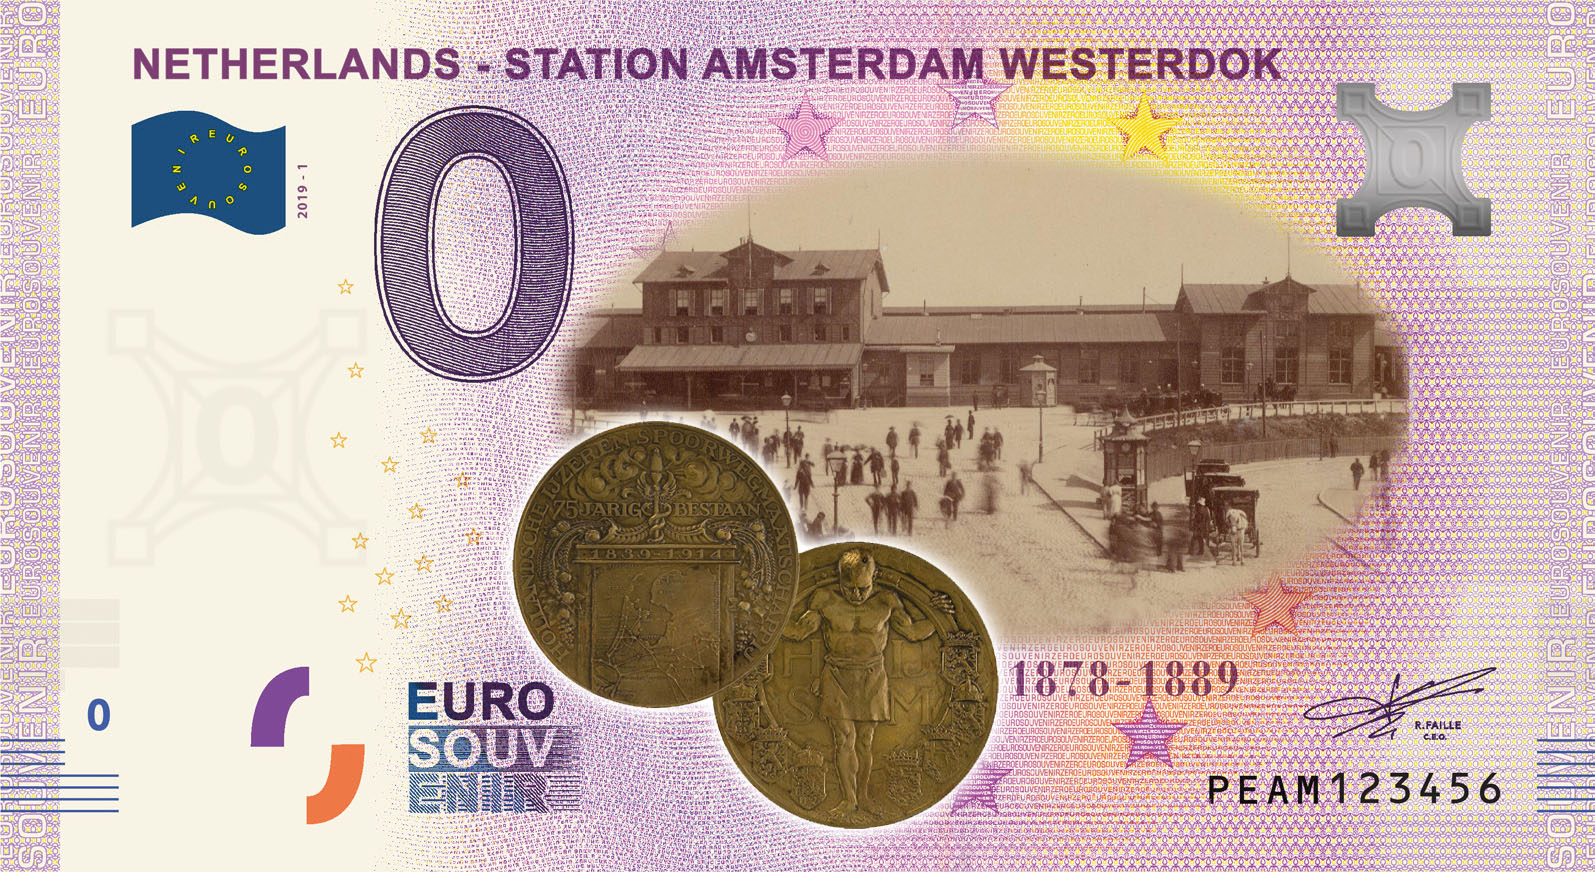 0 Euro biljet Nederland 2019 - Station Amsterdam Westerdok KLEUR